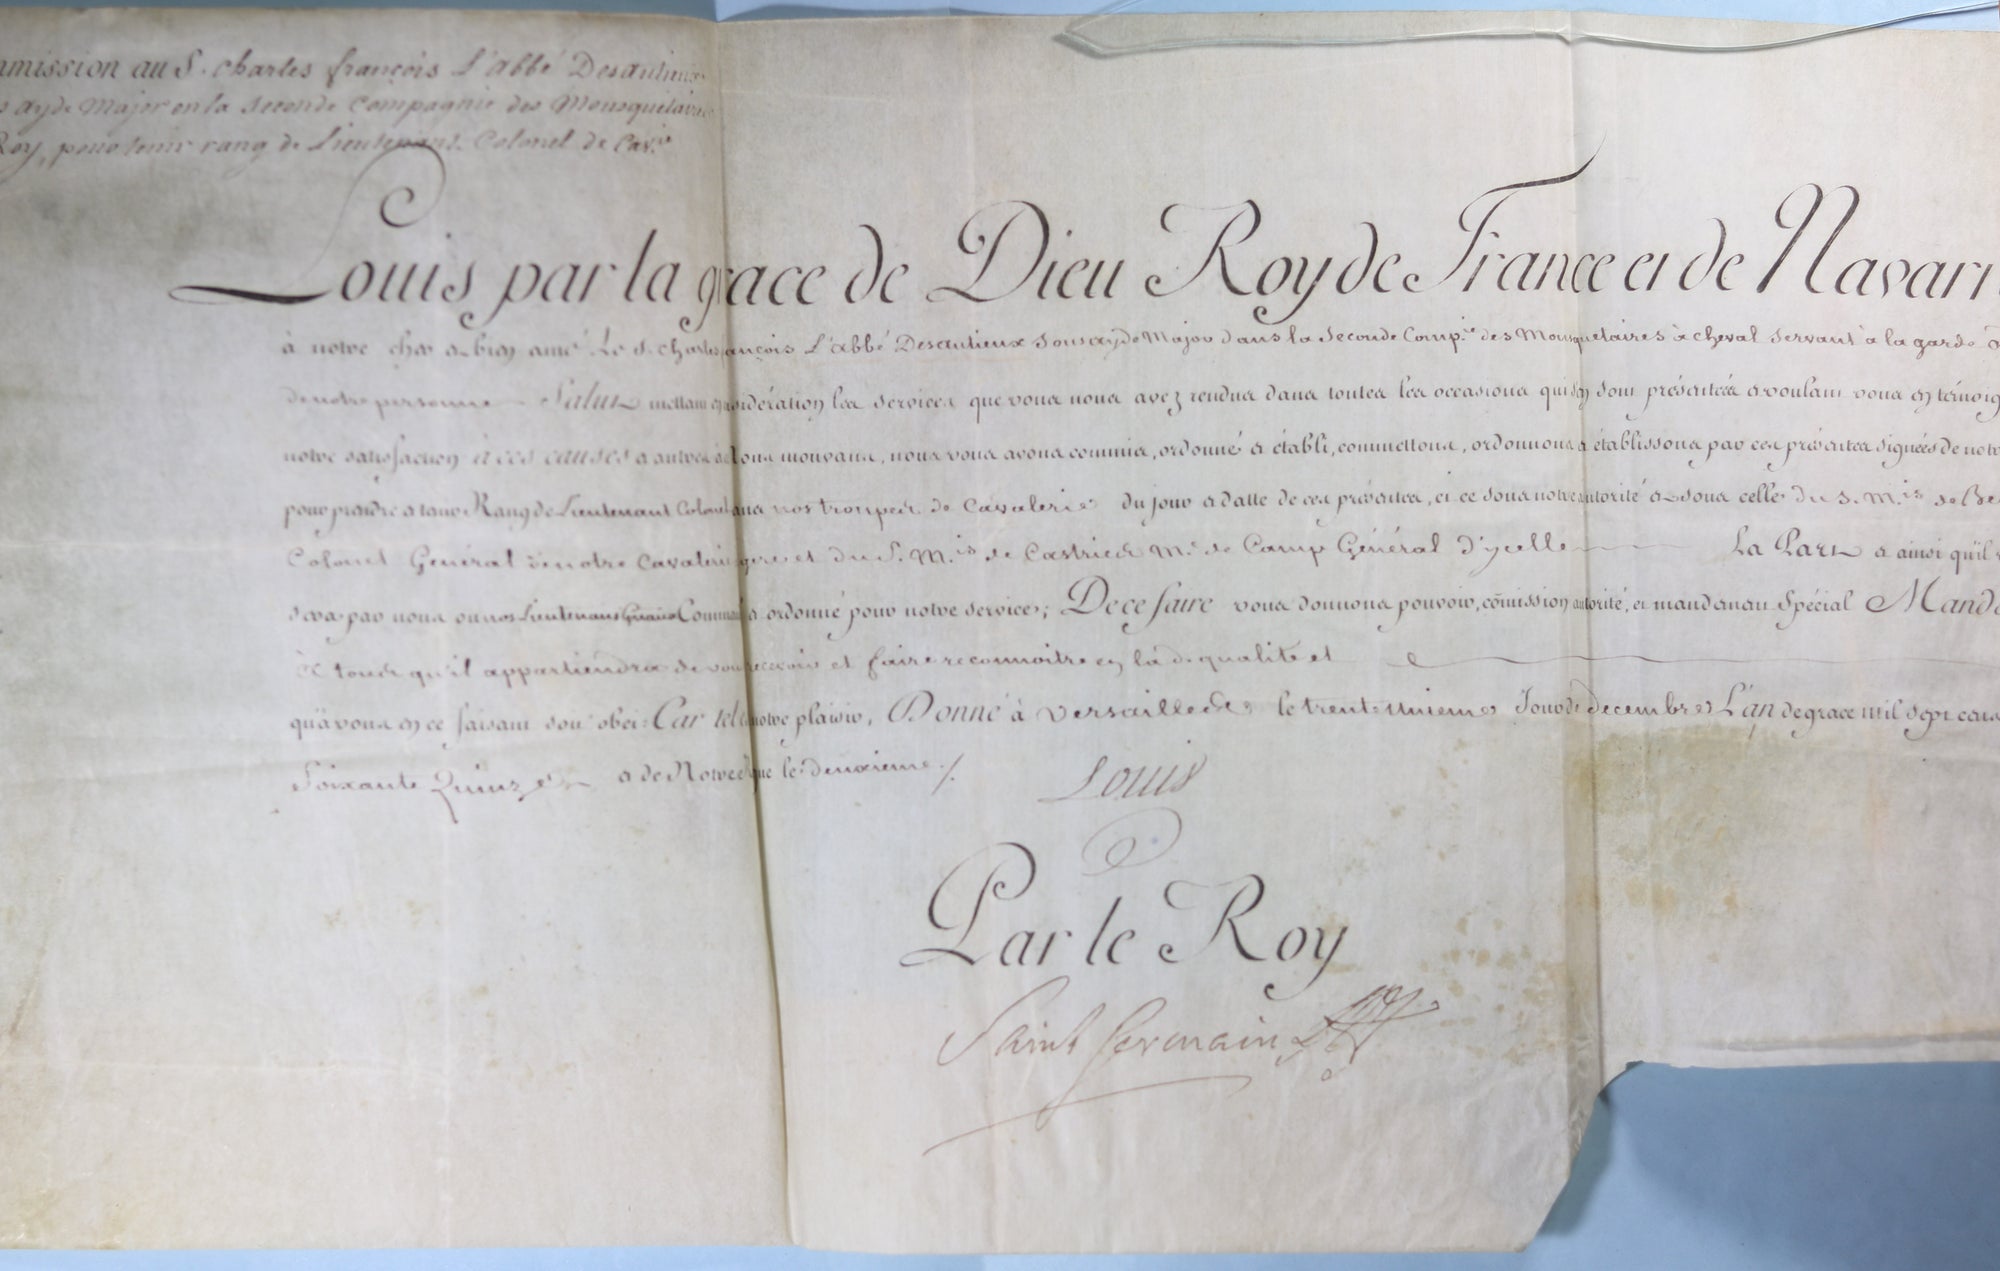 1775 commission Lieut. Colonel Cavalerie, signé Louis & Saint Germain